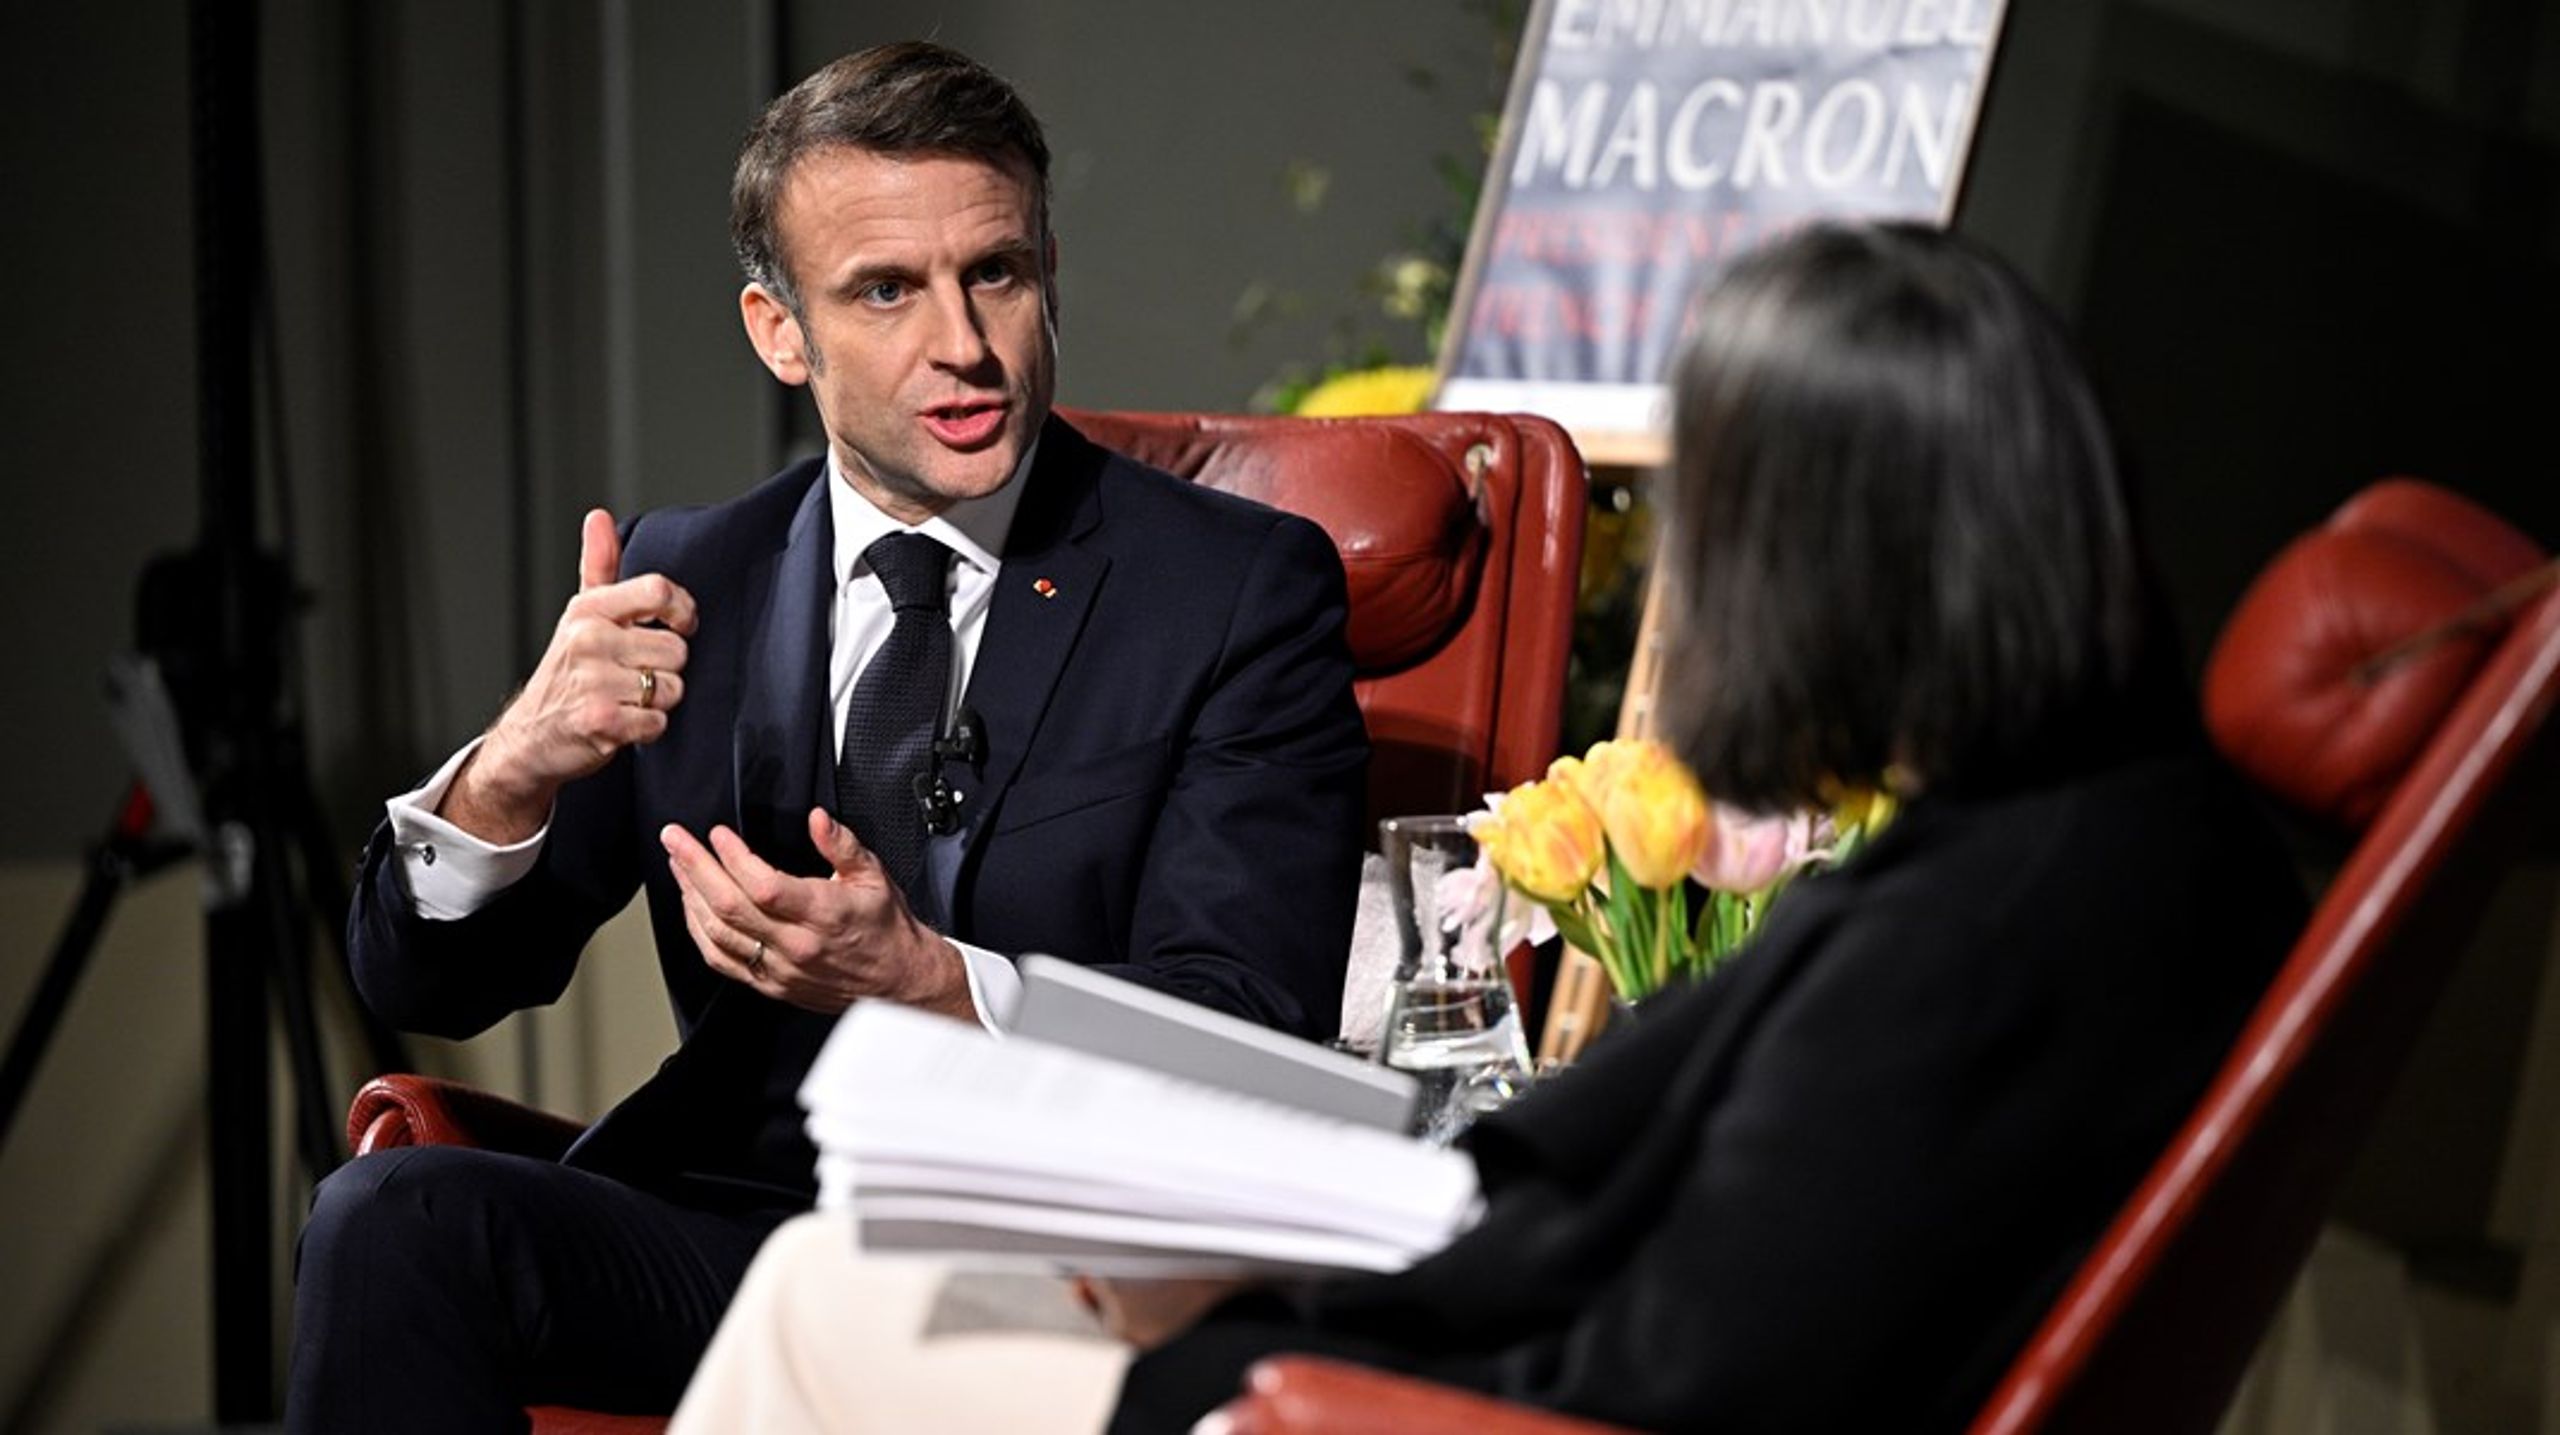 Frankrikes president Emmanuel Macron deltog på onsdagen på Studentafton i Lund och fick bland annat frågor från studenterna&nbsp;om kriget i Ukraina och EU:s relation till Ryssland.